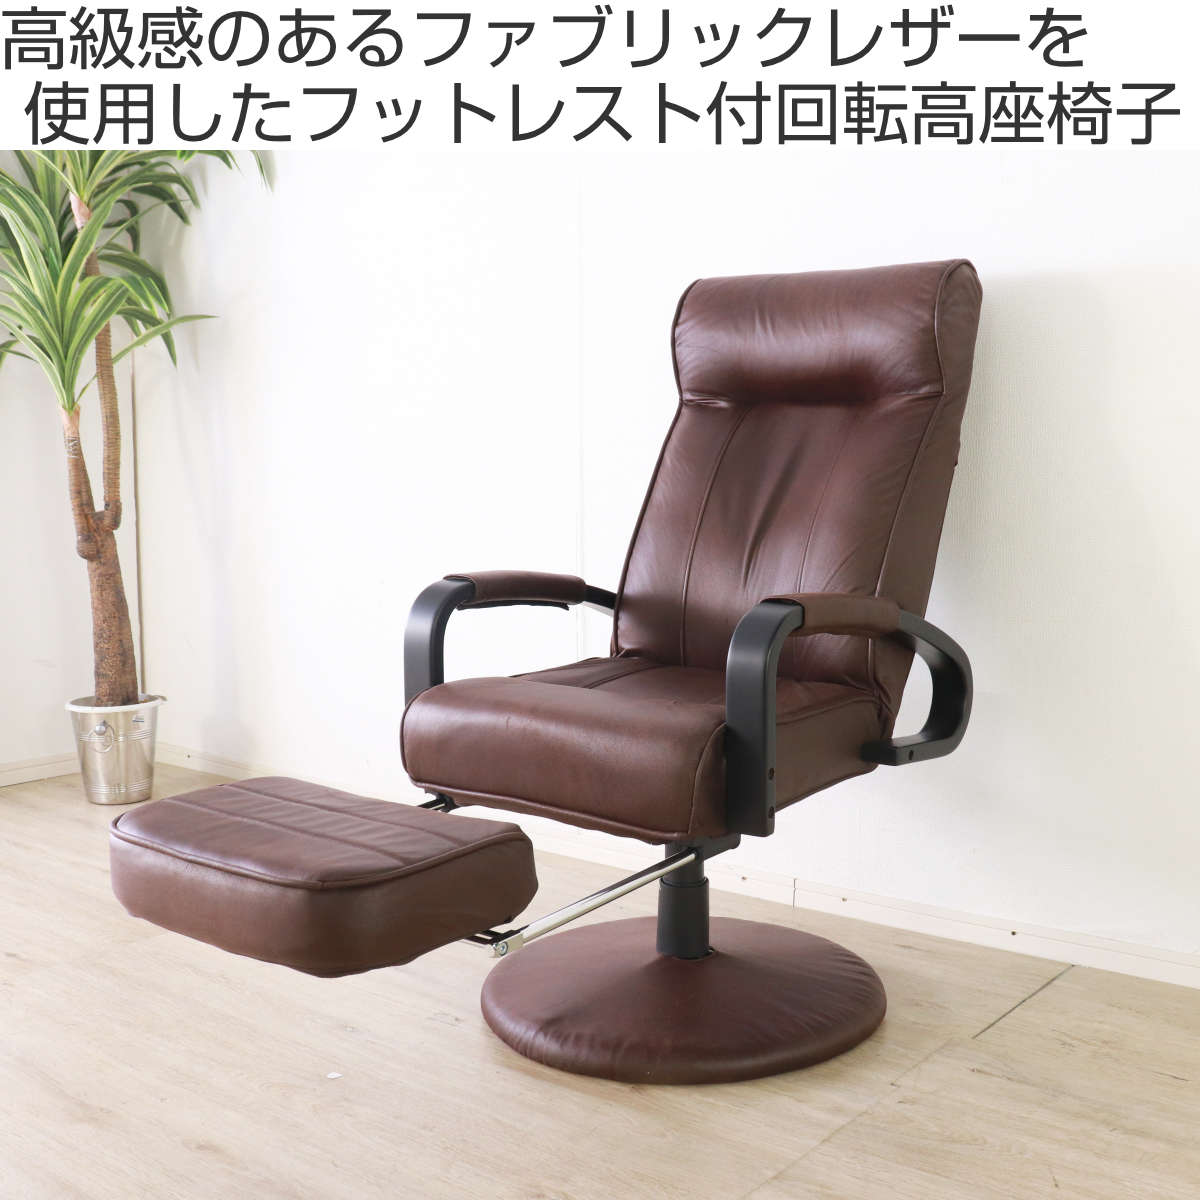 昭和レトロ 高座椅子 パーソナルチェアー リクライニング 茶色 ブラウン